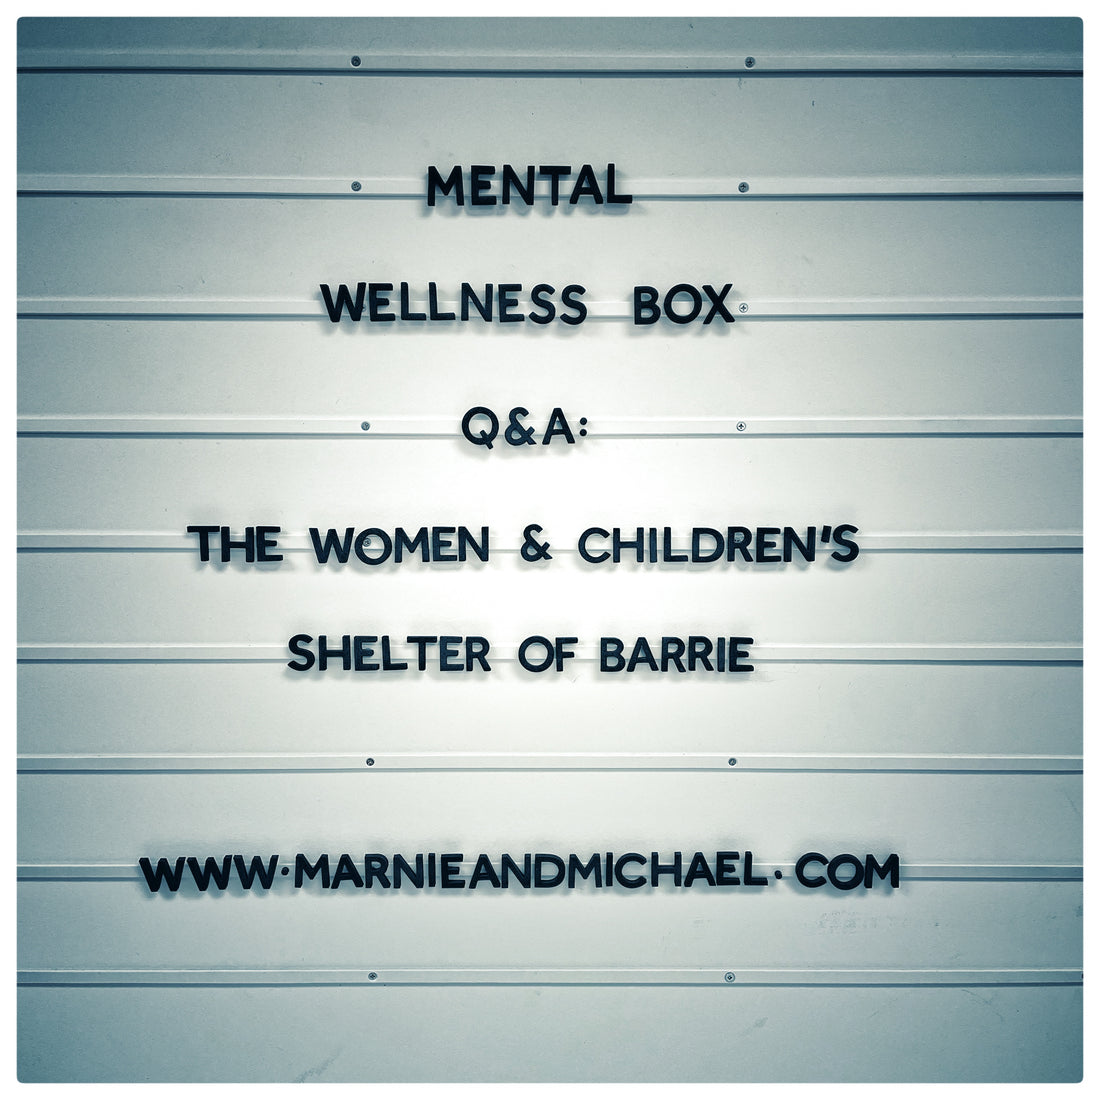 MENTAL WELLNESS BOX 'Q&A': THE WOMEN & CHILDREN'S SHELTER OF BARRIE